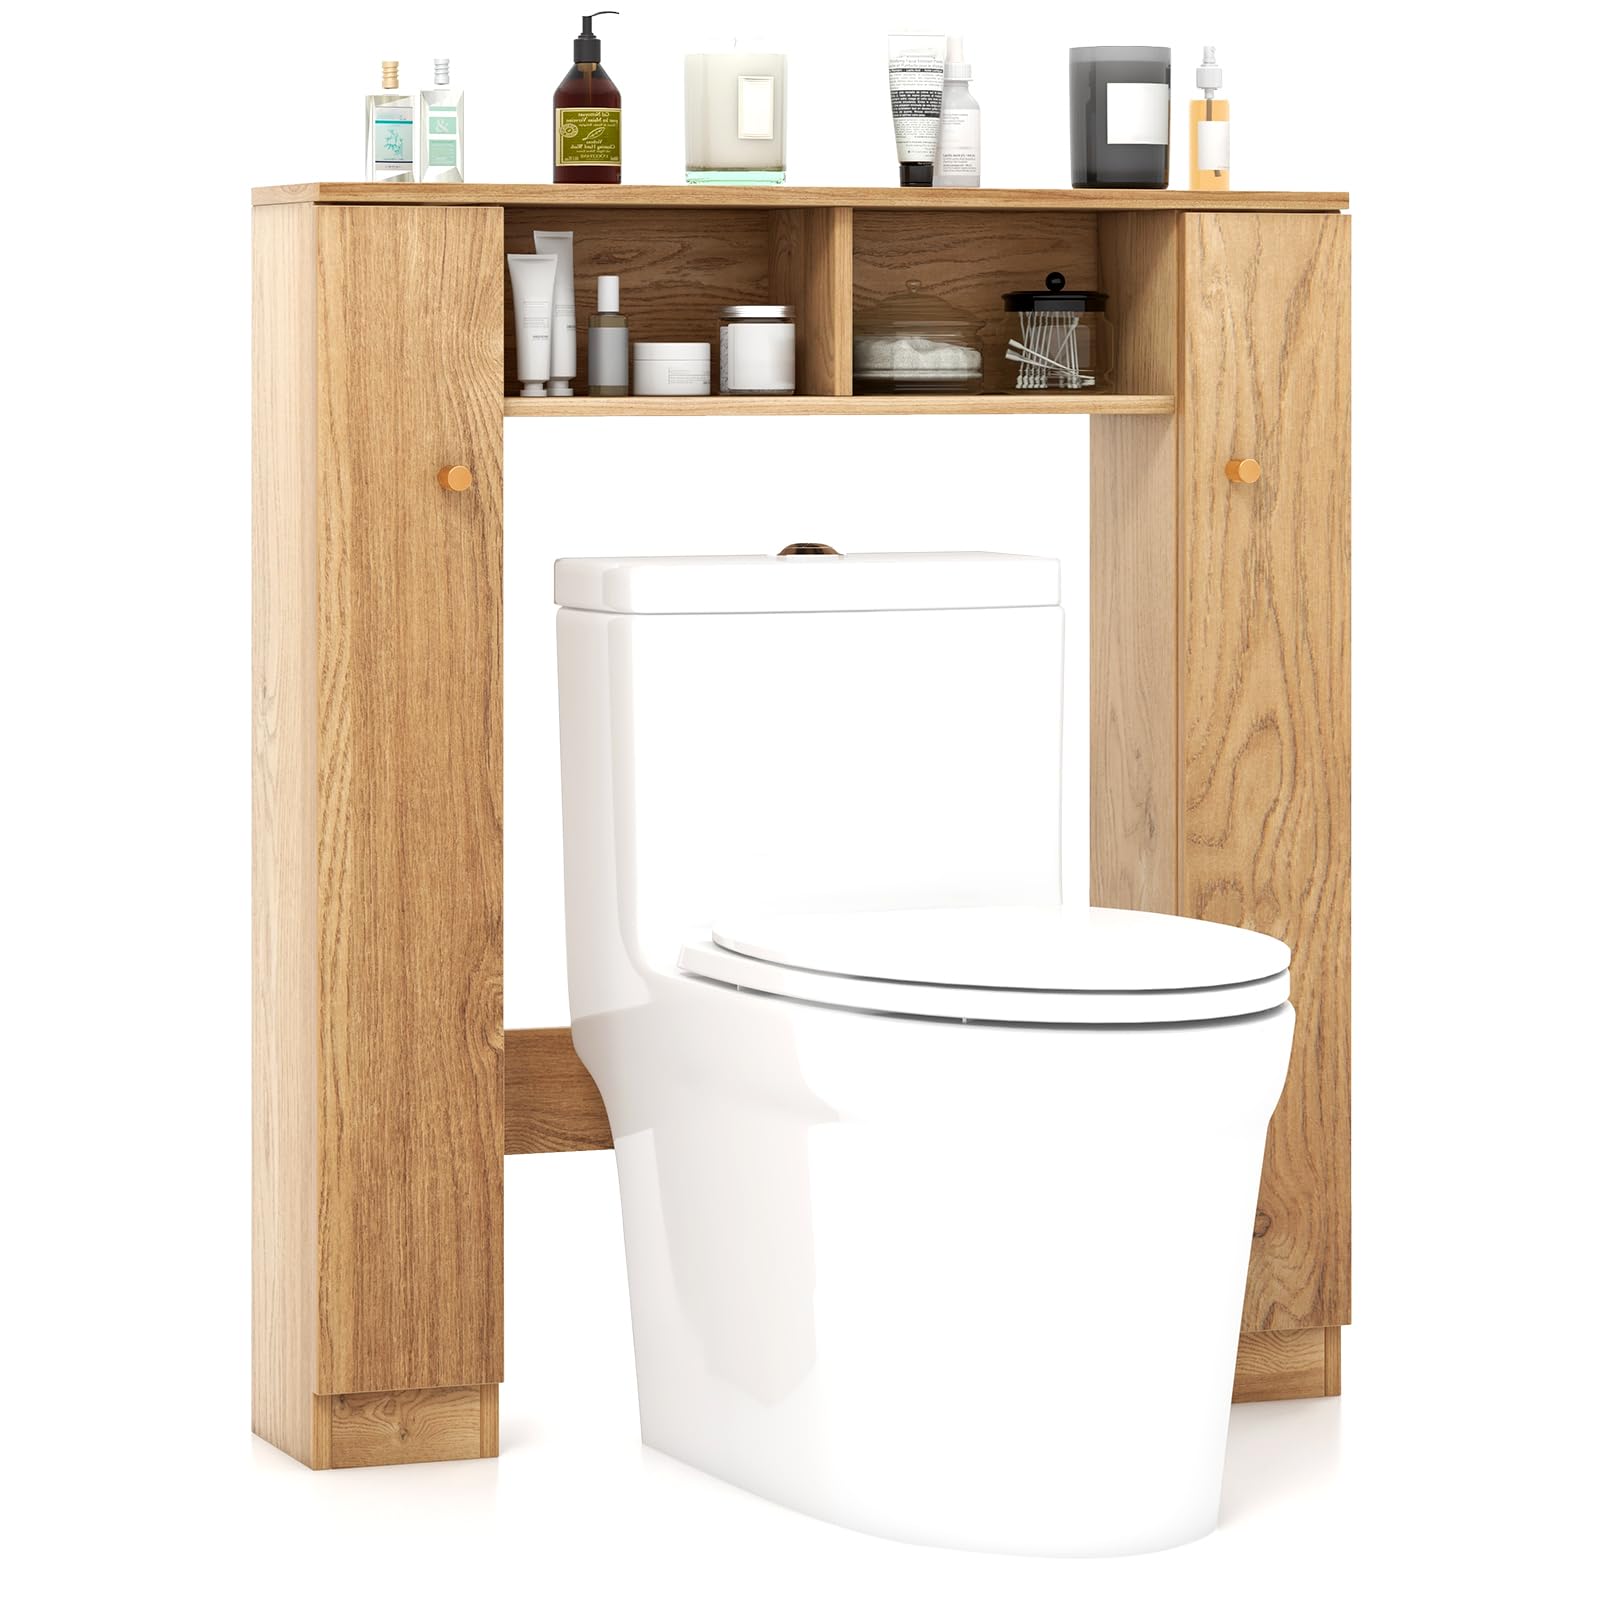 Giantex Over The Toilet Storage Cabinet, Double Door Freestanding Bathroom Organizer